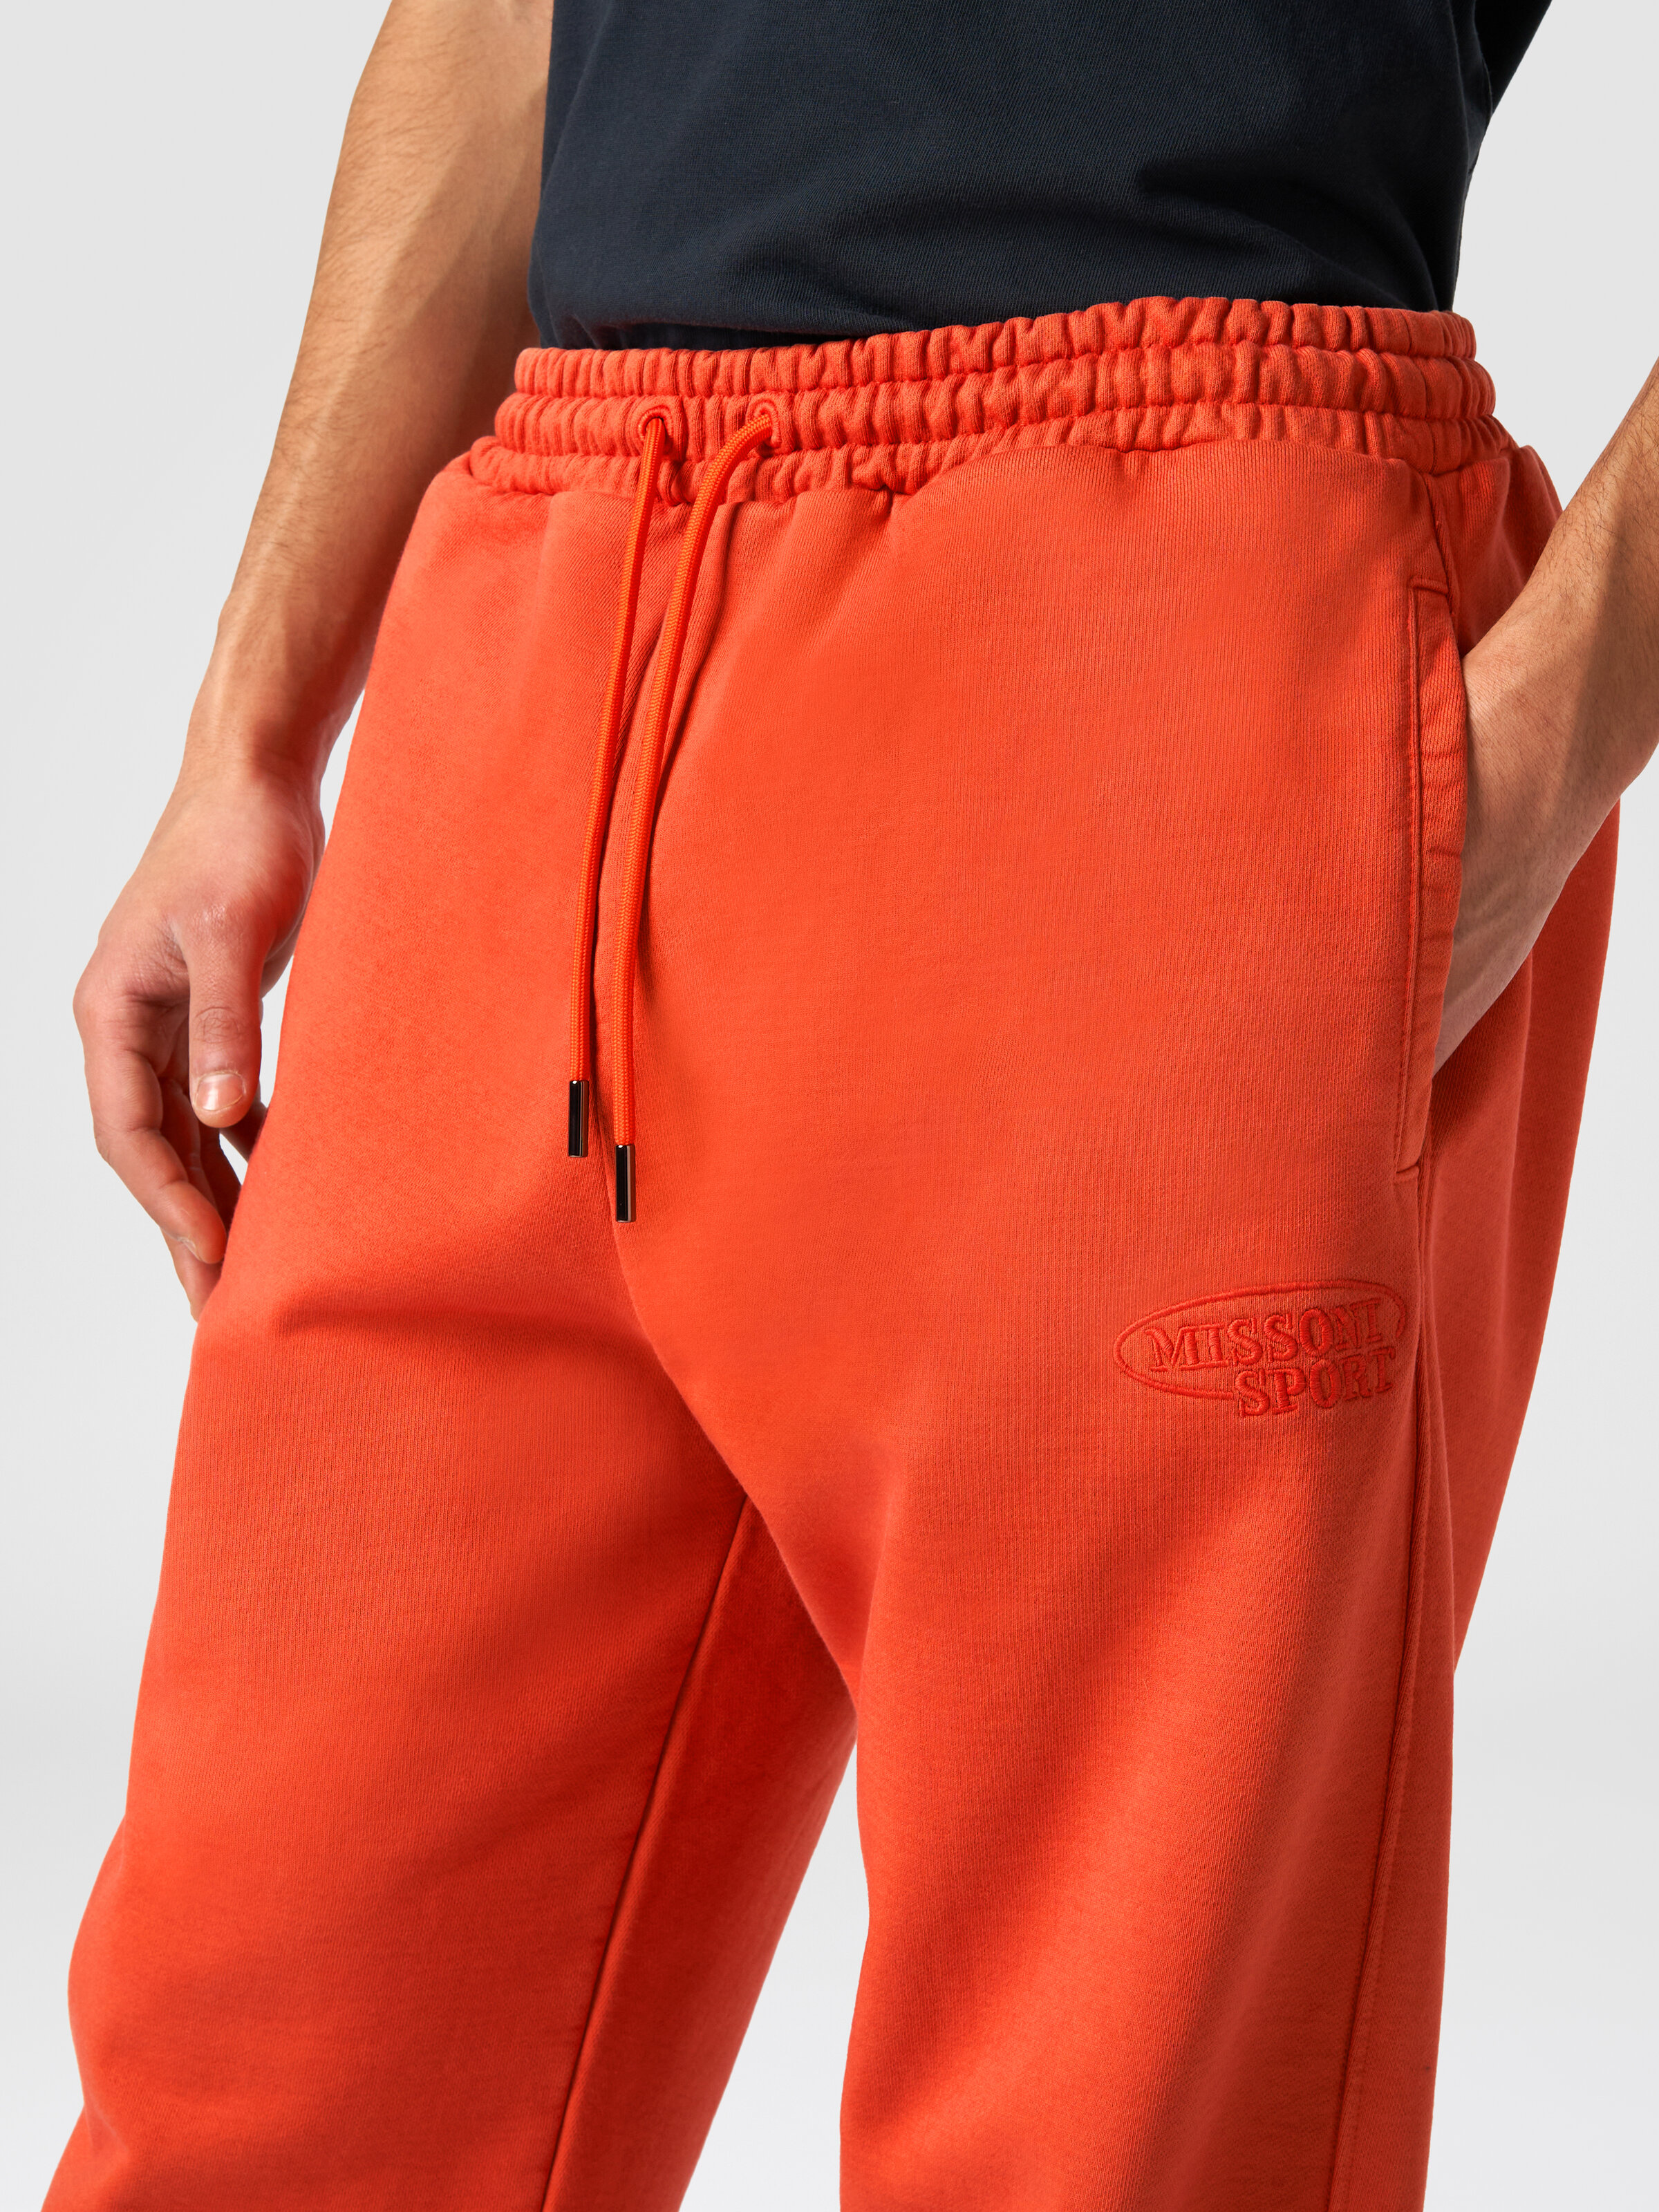 Hose aus Baumwollsweat mit Logo, Orange - 4